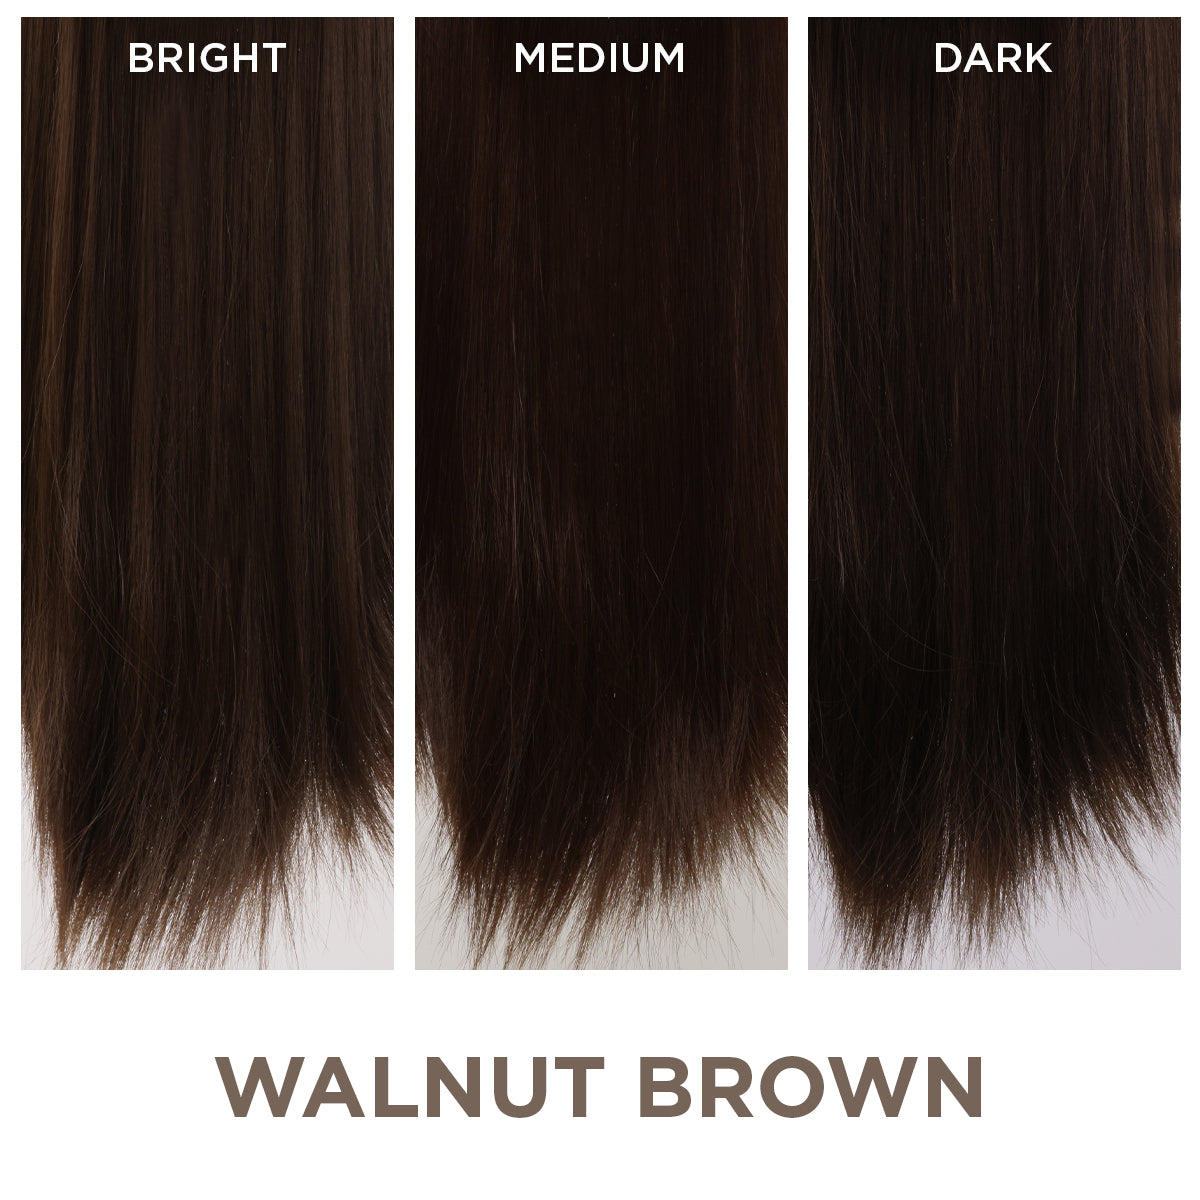 Walnut Brown